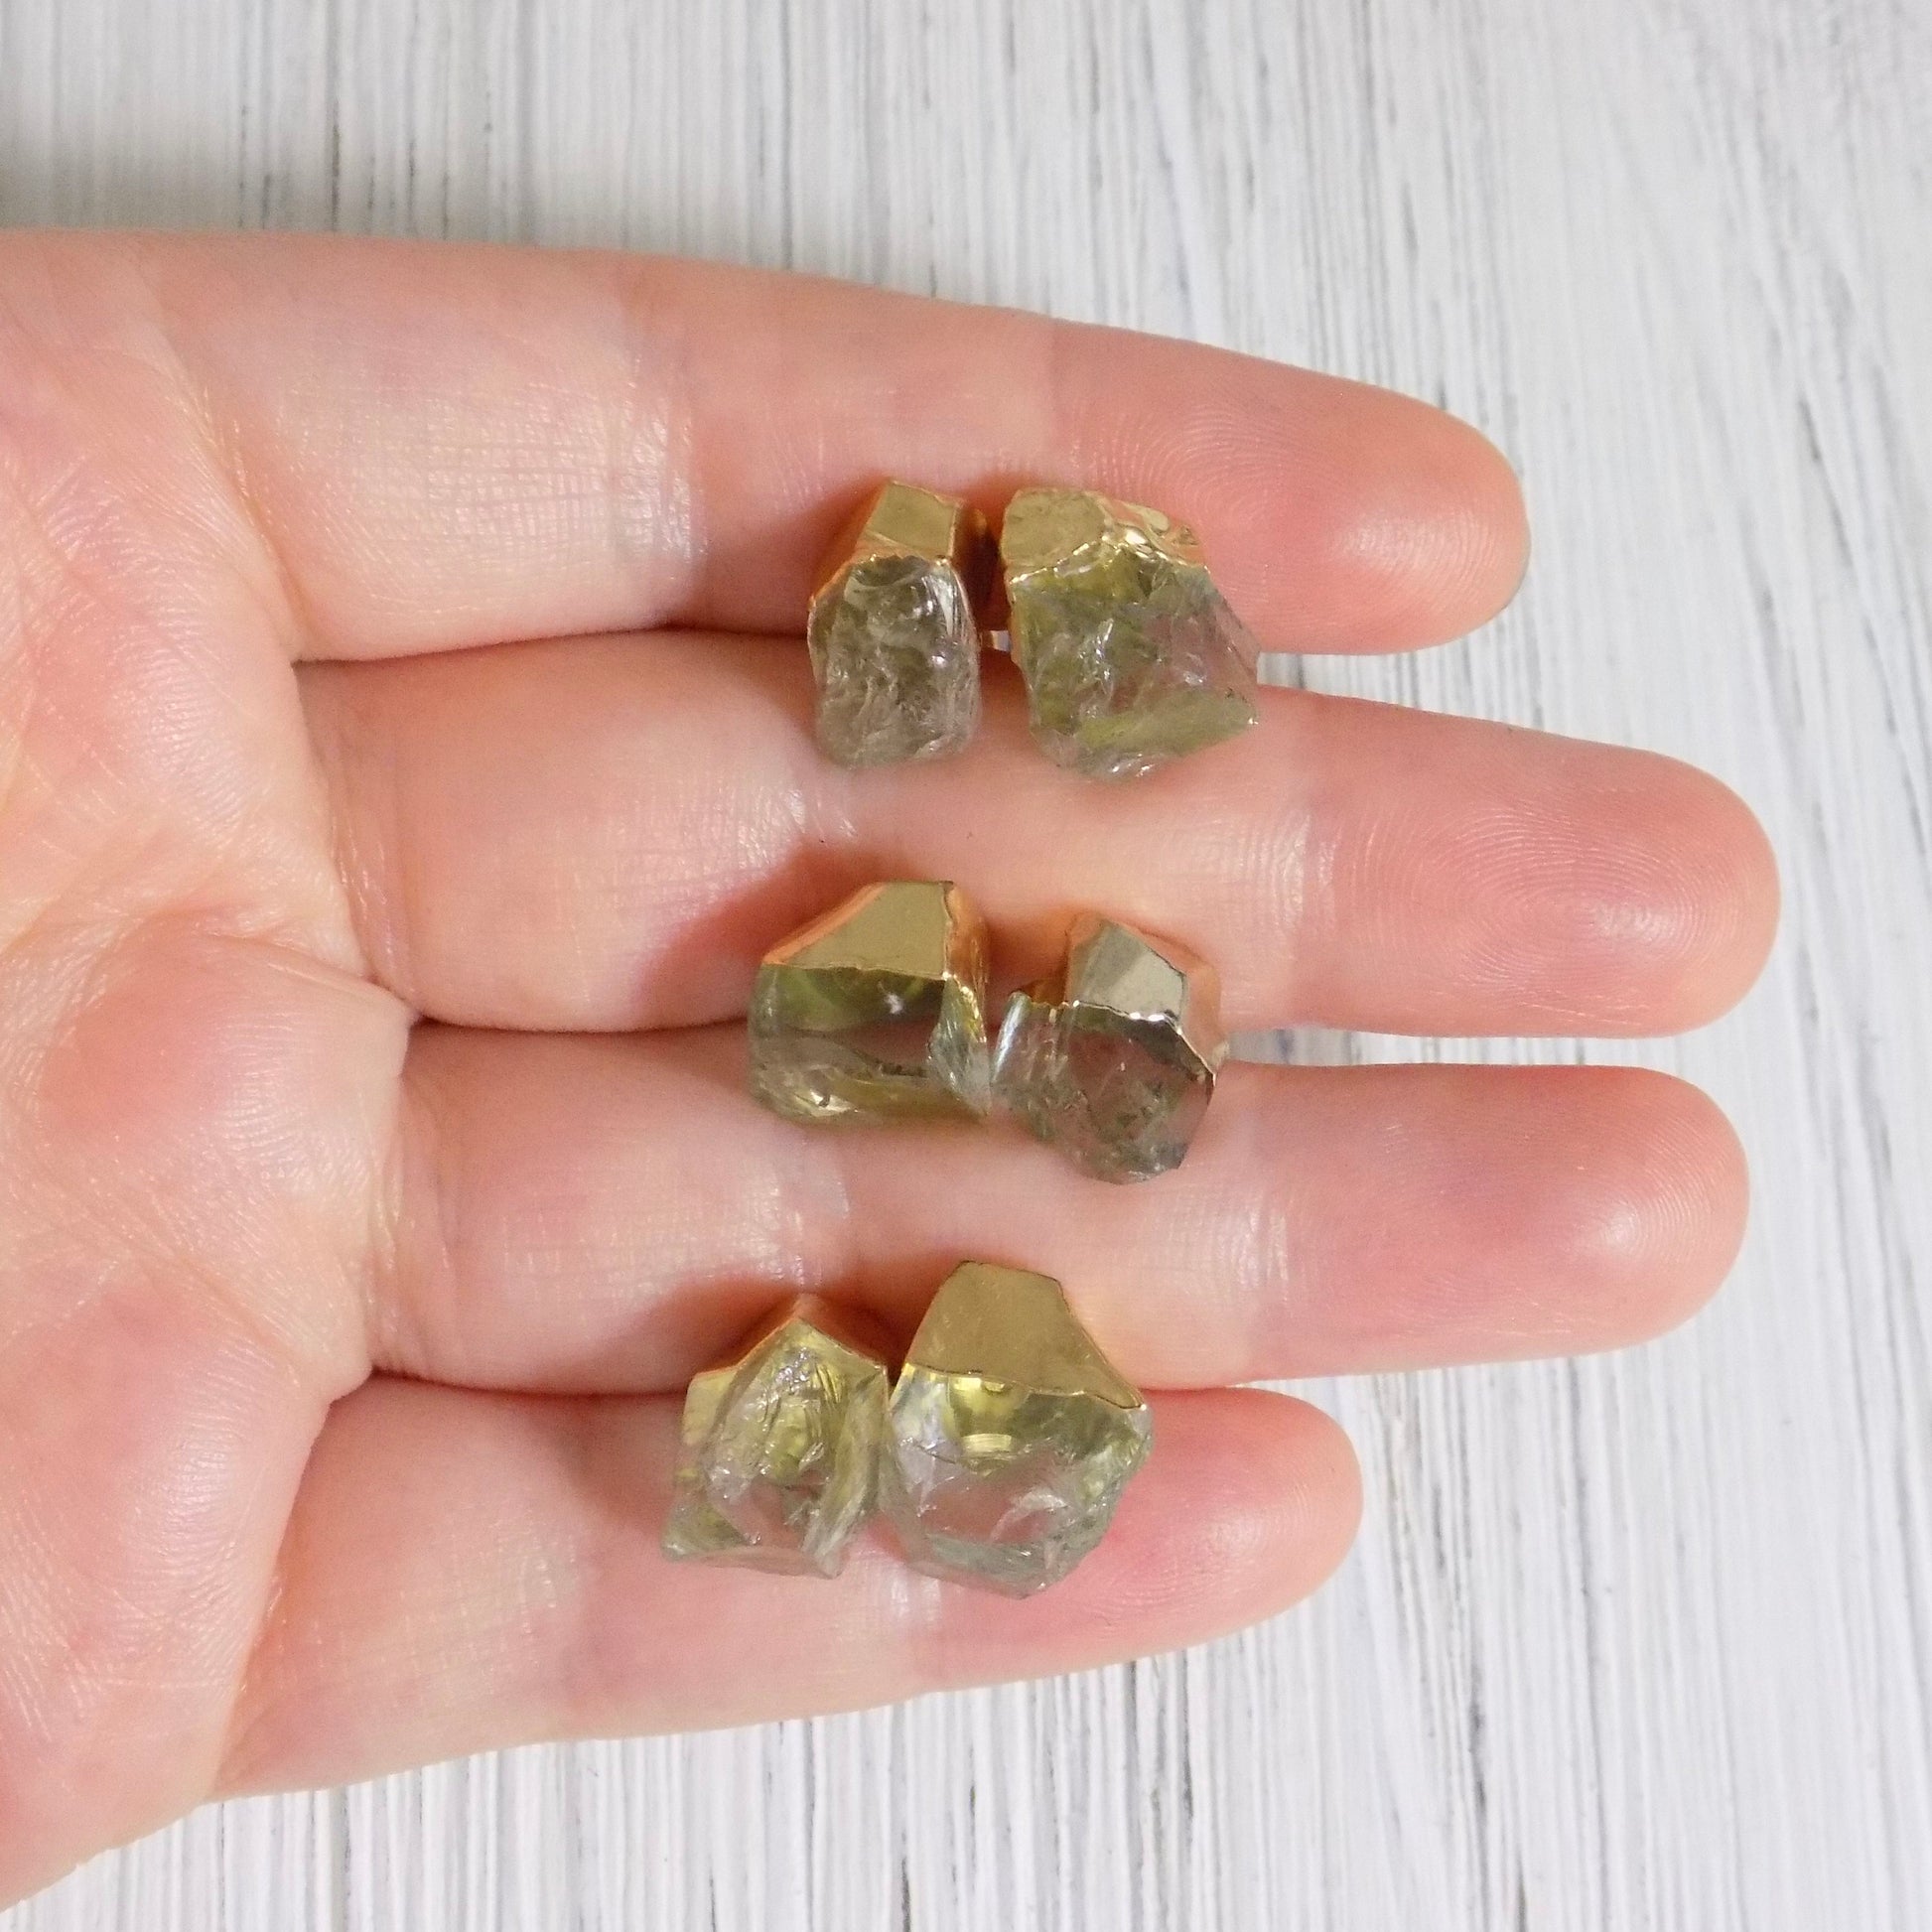 Raw Green Amethyst Earrings Stud Gold - Light Green Raw Stone Earring For Women